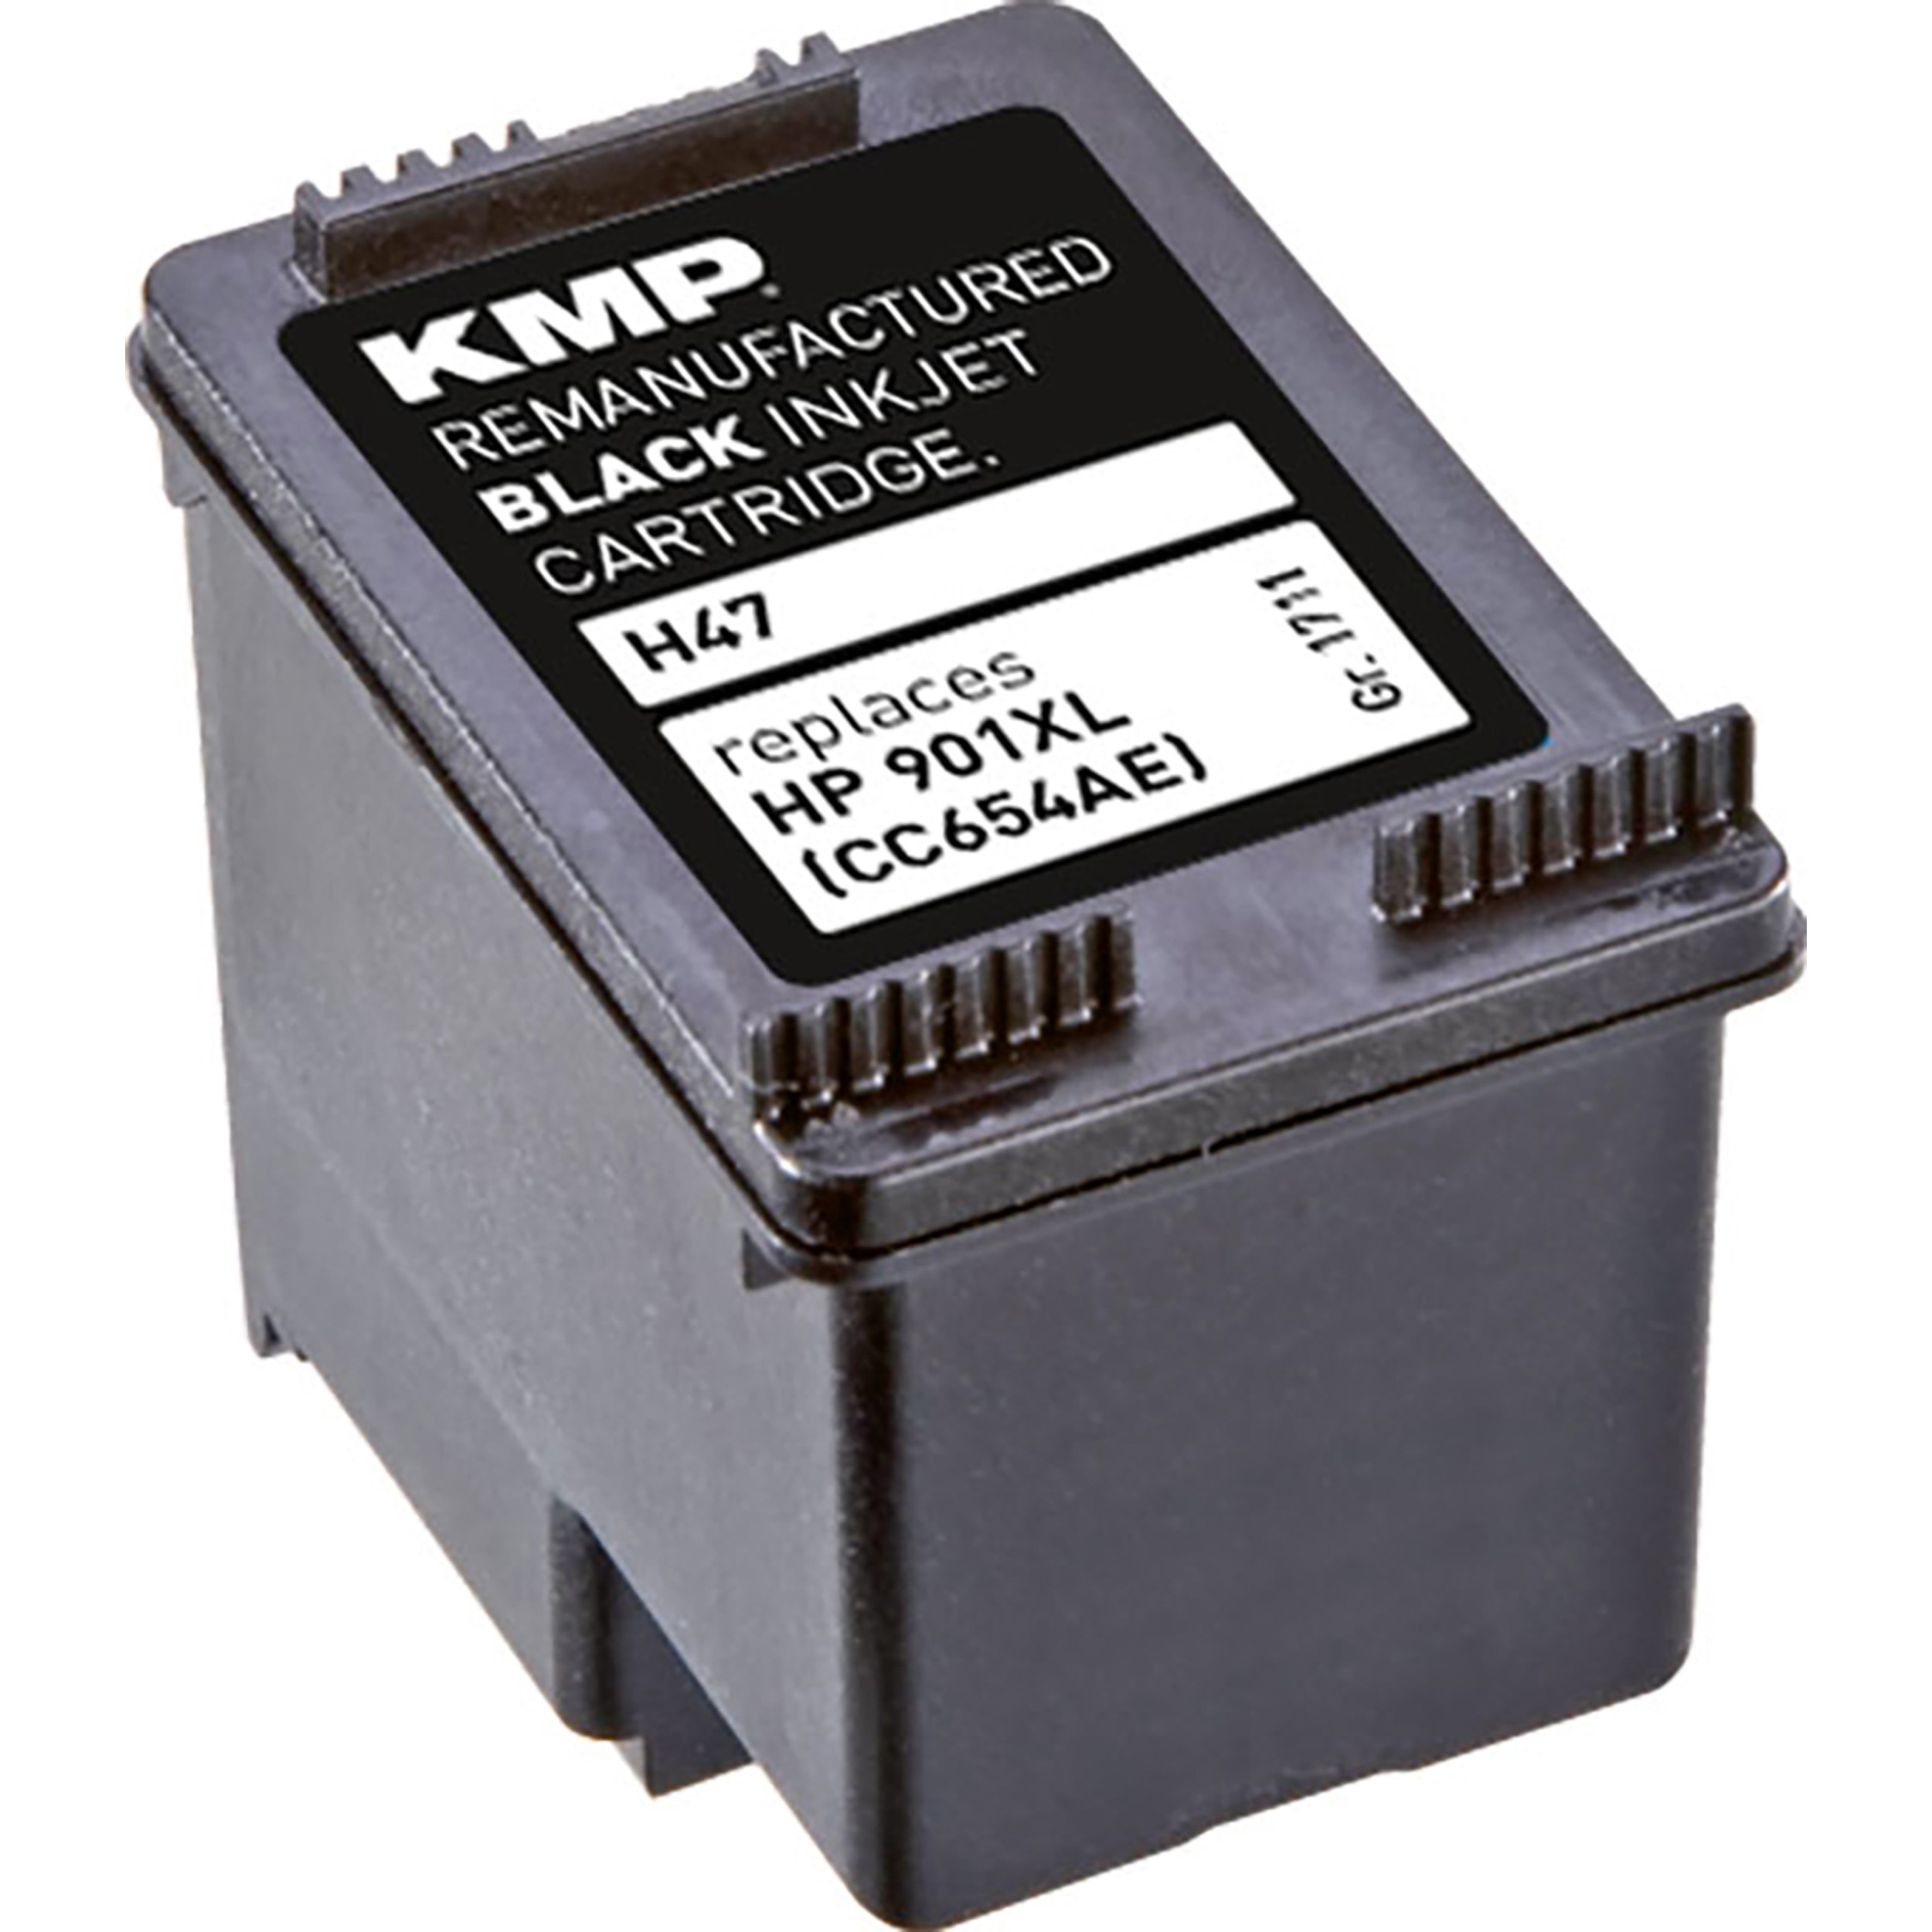 KMP Tintenpatrone für HP (CC654AE) (CC654AE) 901XL Ink Black Cartridge black